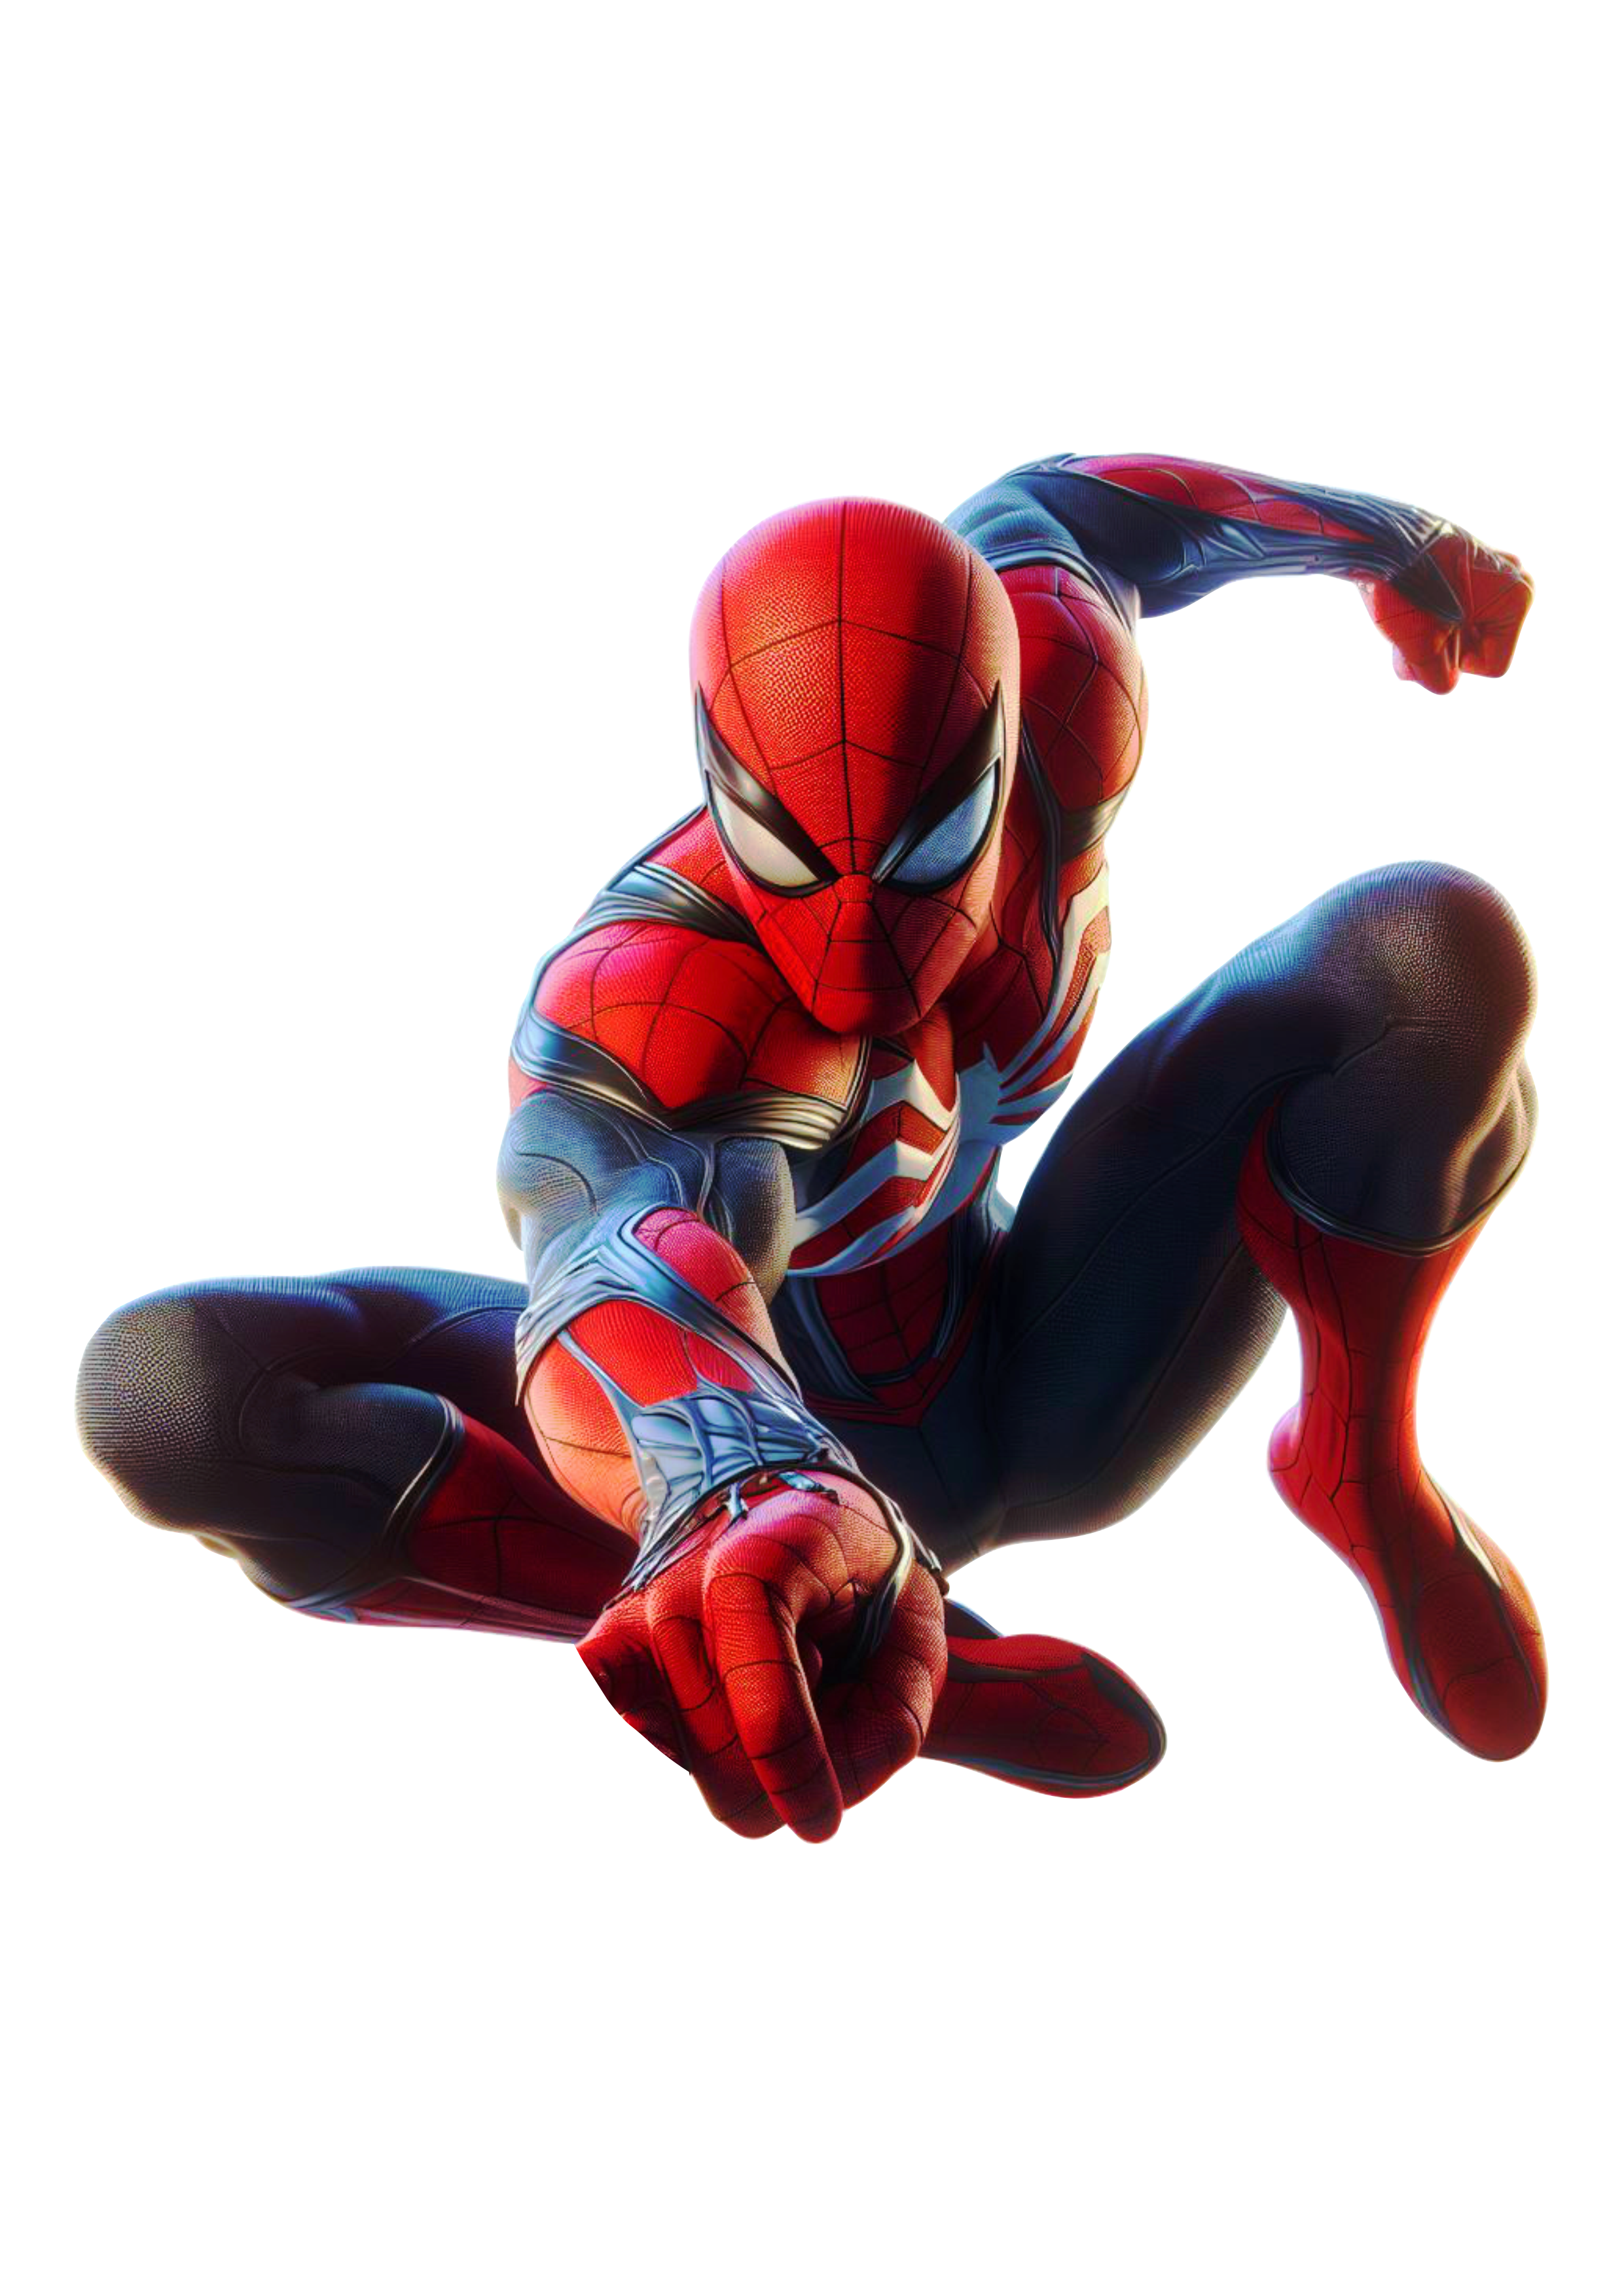 O espetacular Homem-Aranha personagem de quadrinhos e games fundo transparente png clipart